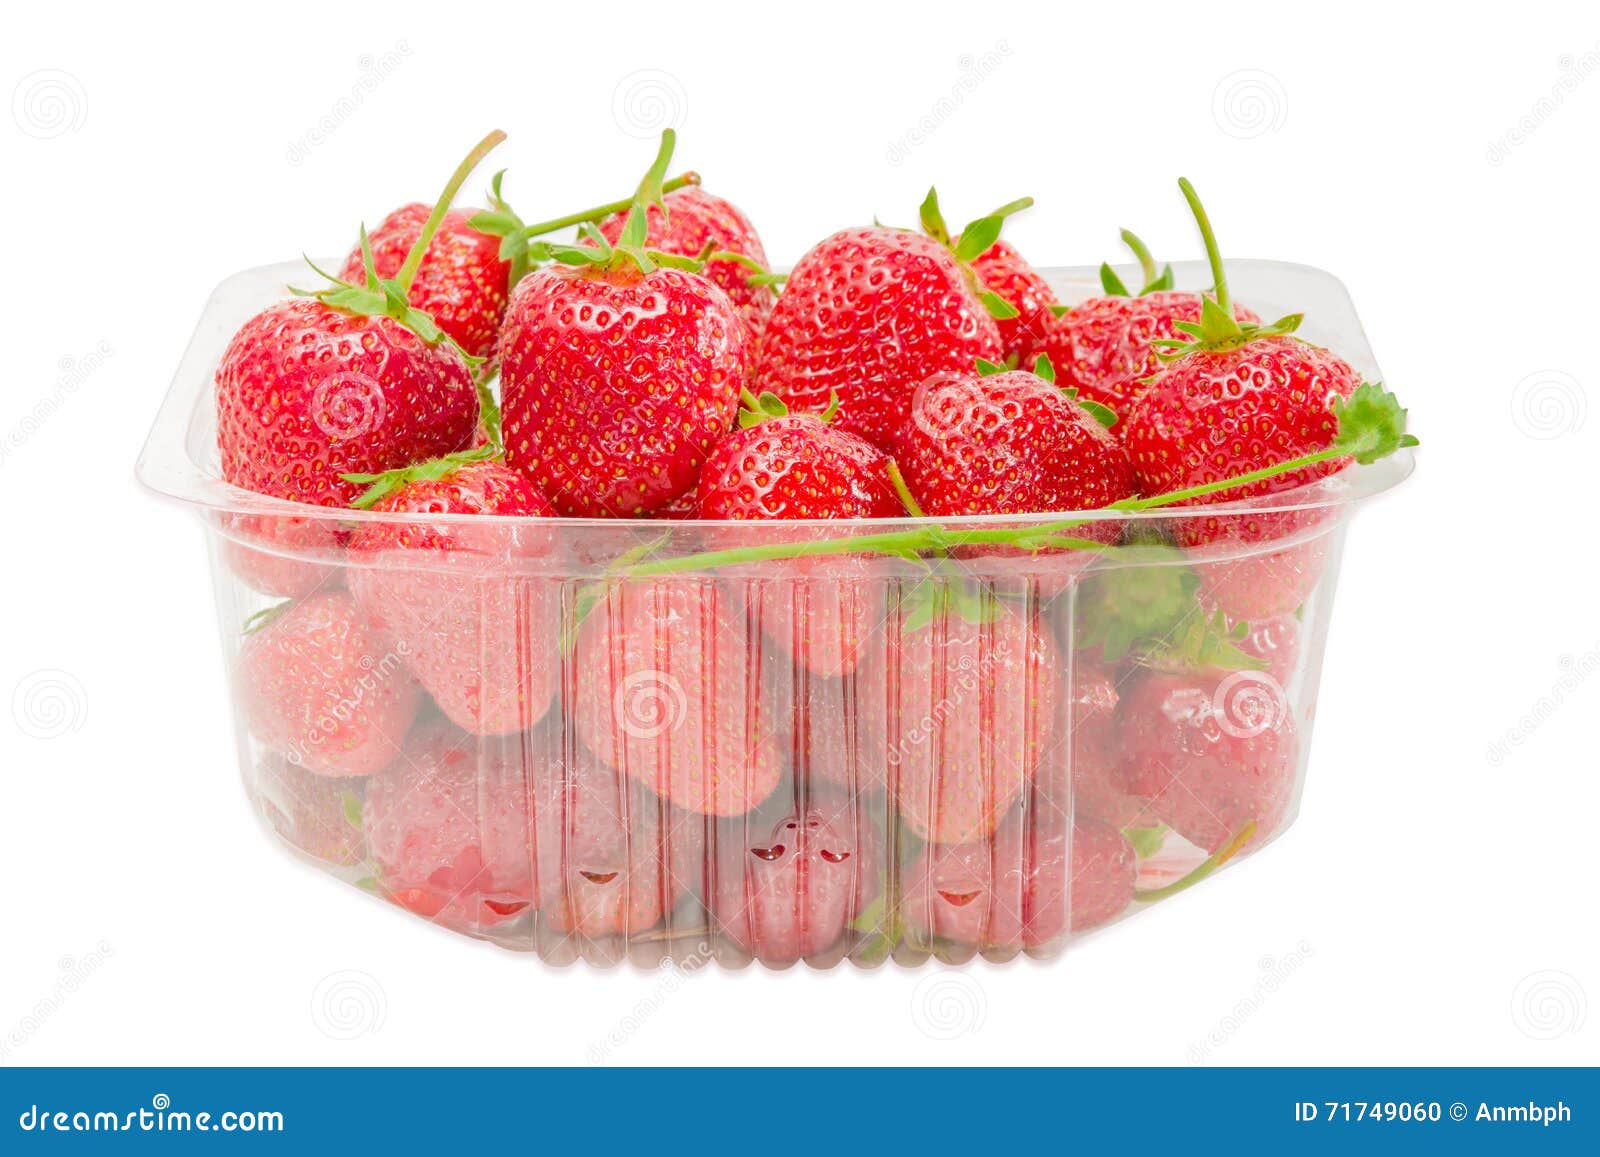 plateau fruits le porta frutta